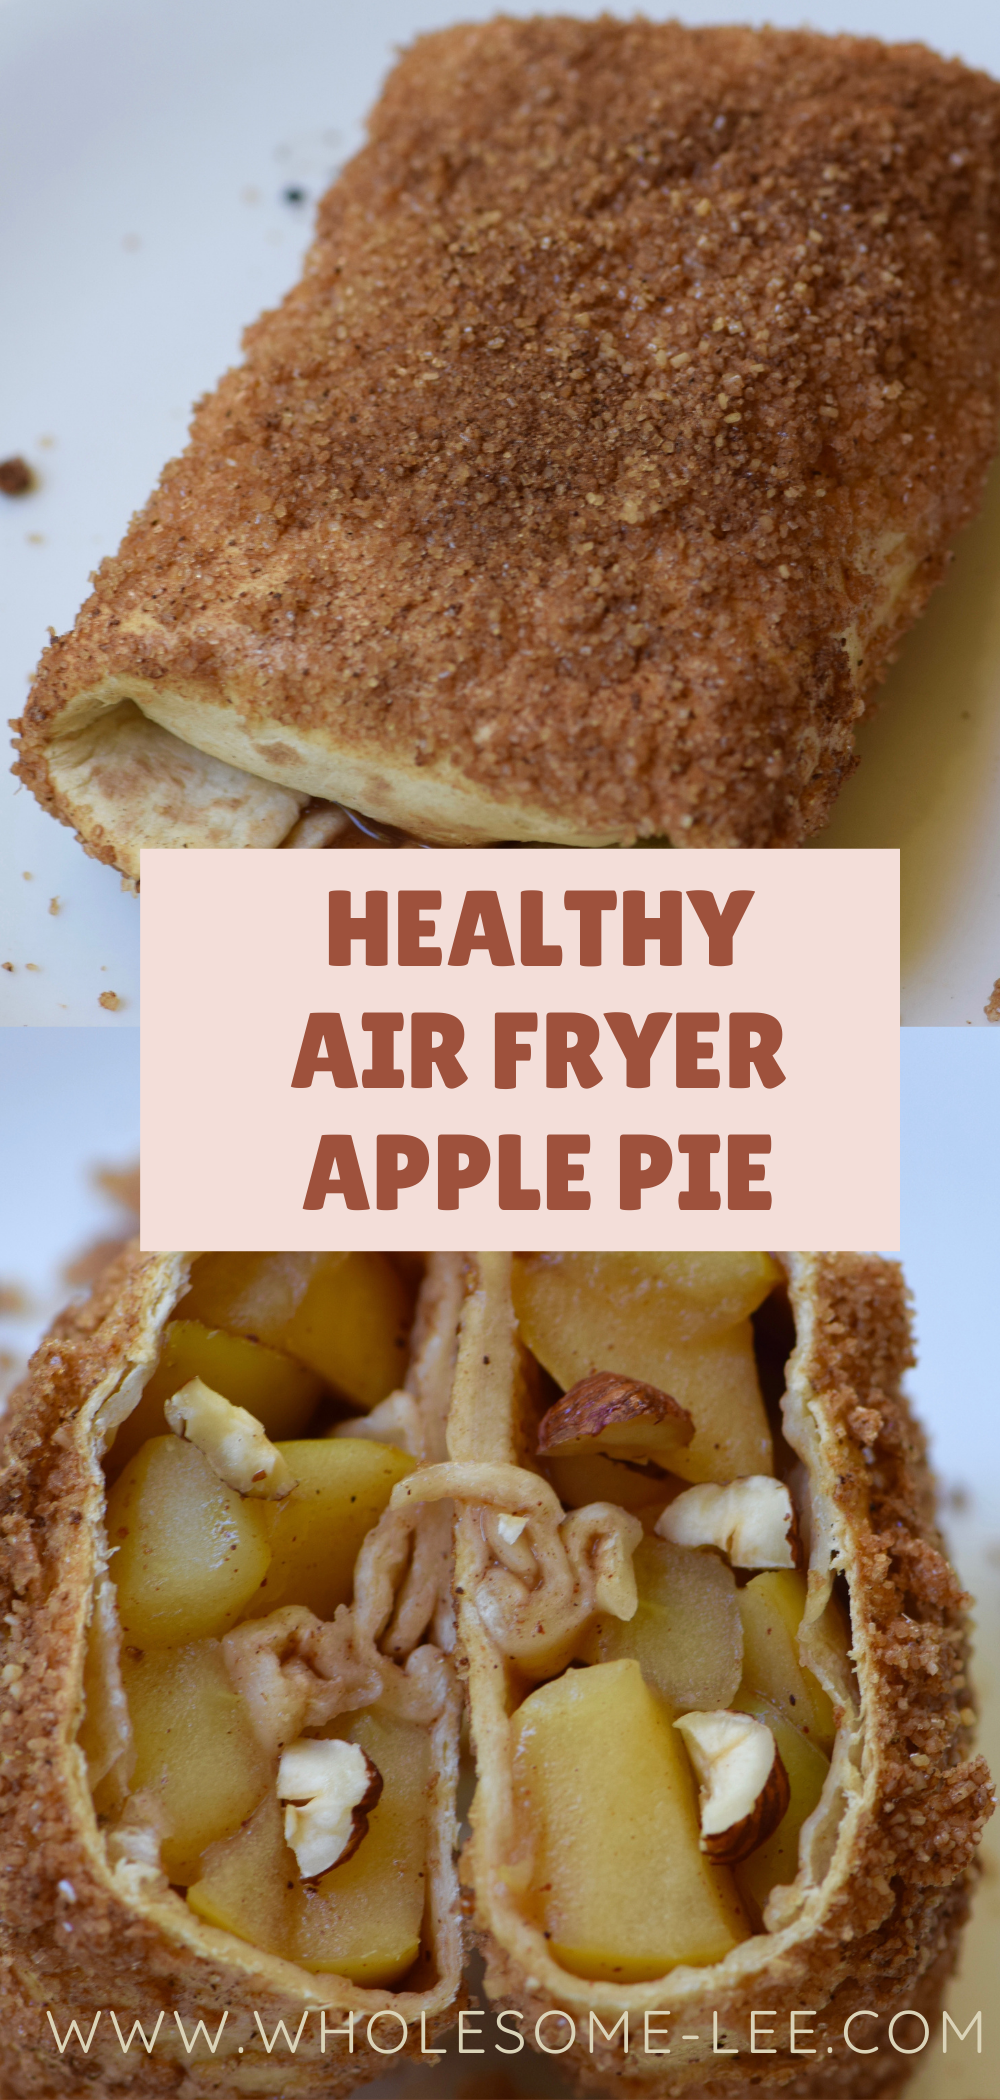 Healthy air fryer apple pie